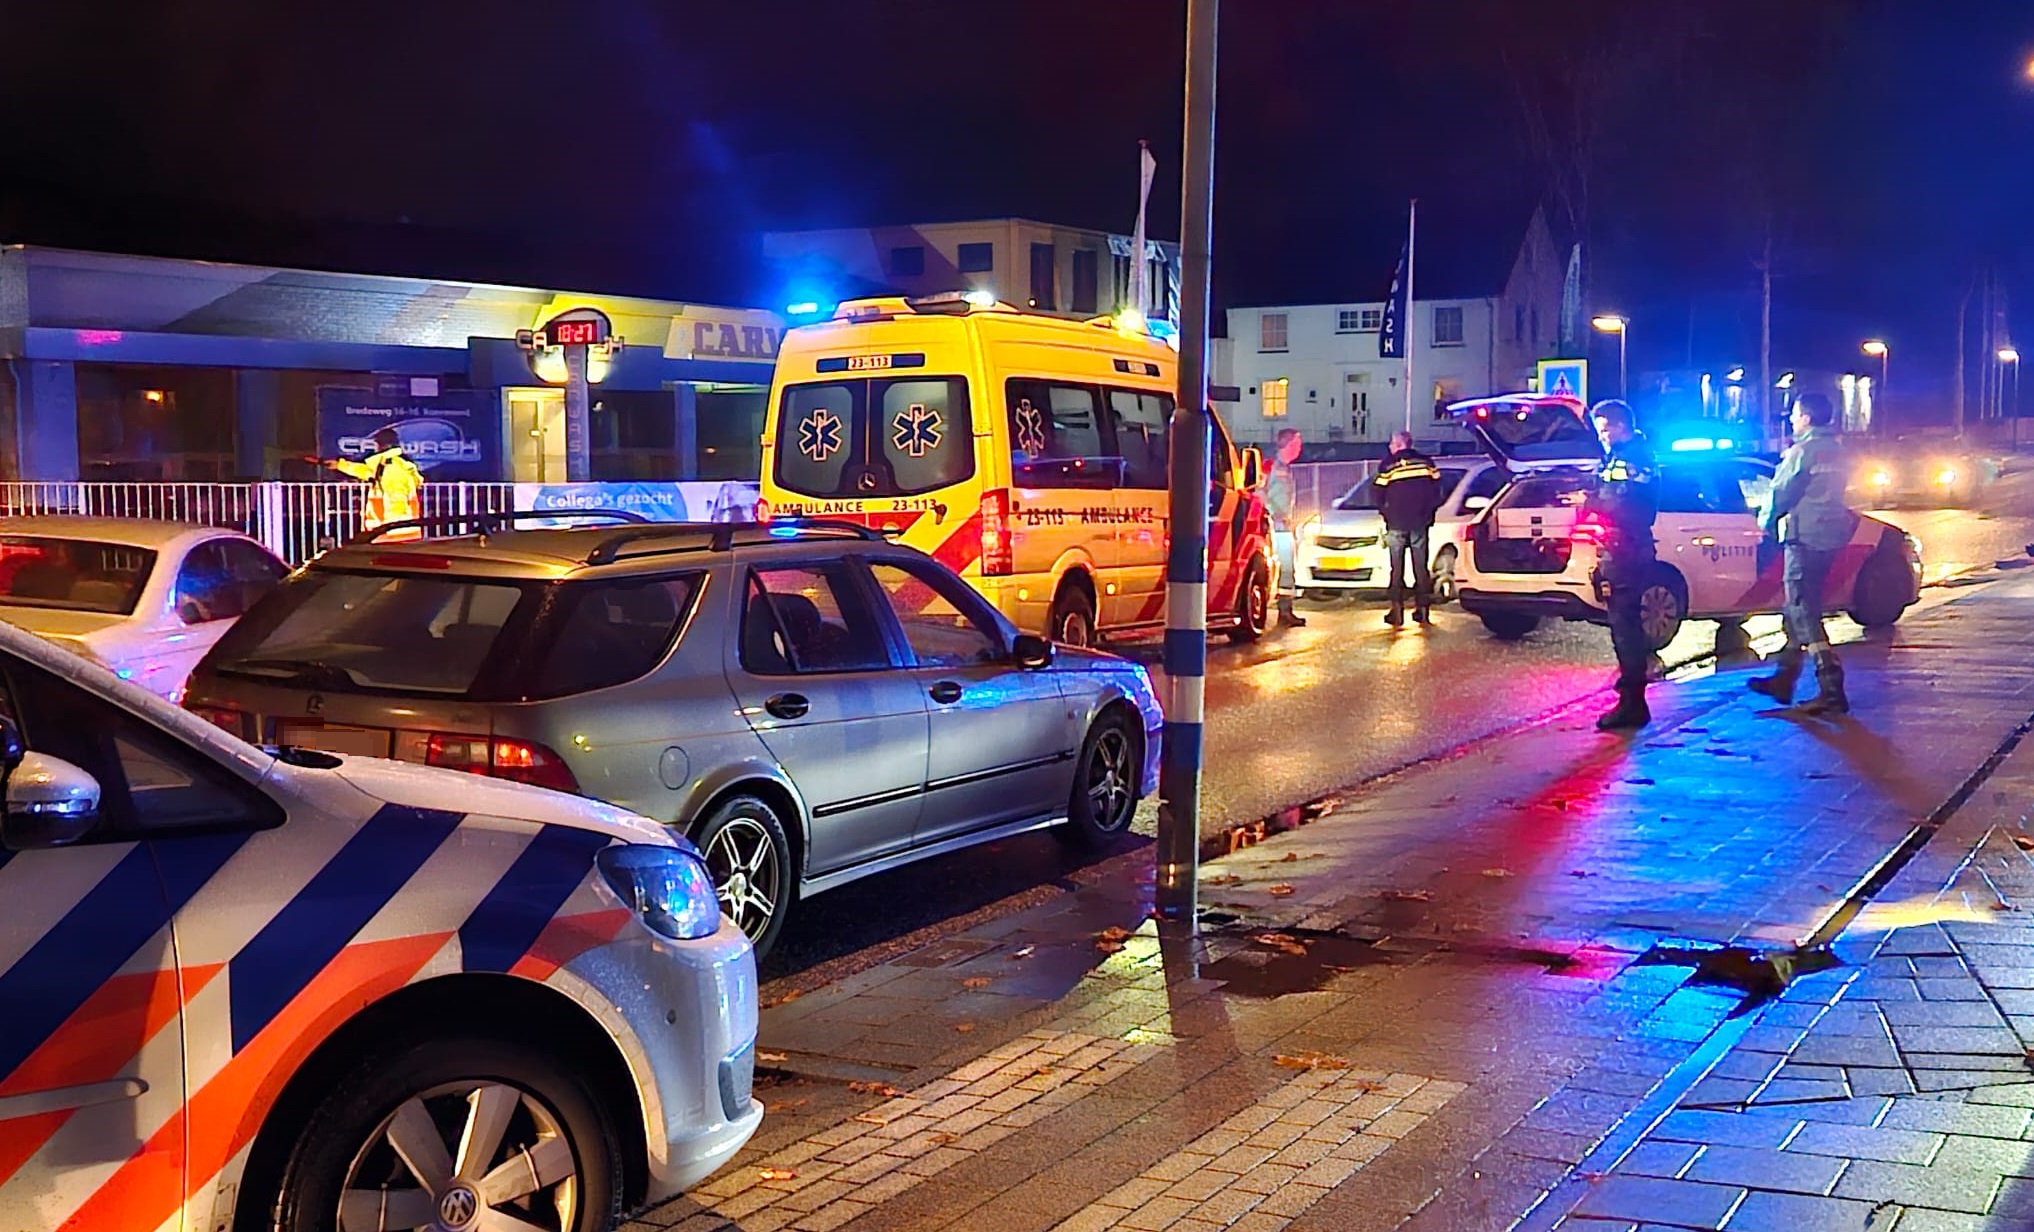 Voetganger gewond bij verkeersongeval in Roermond